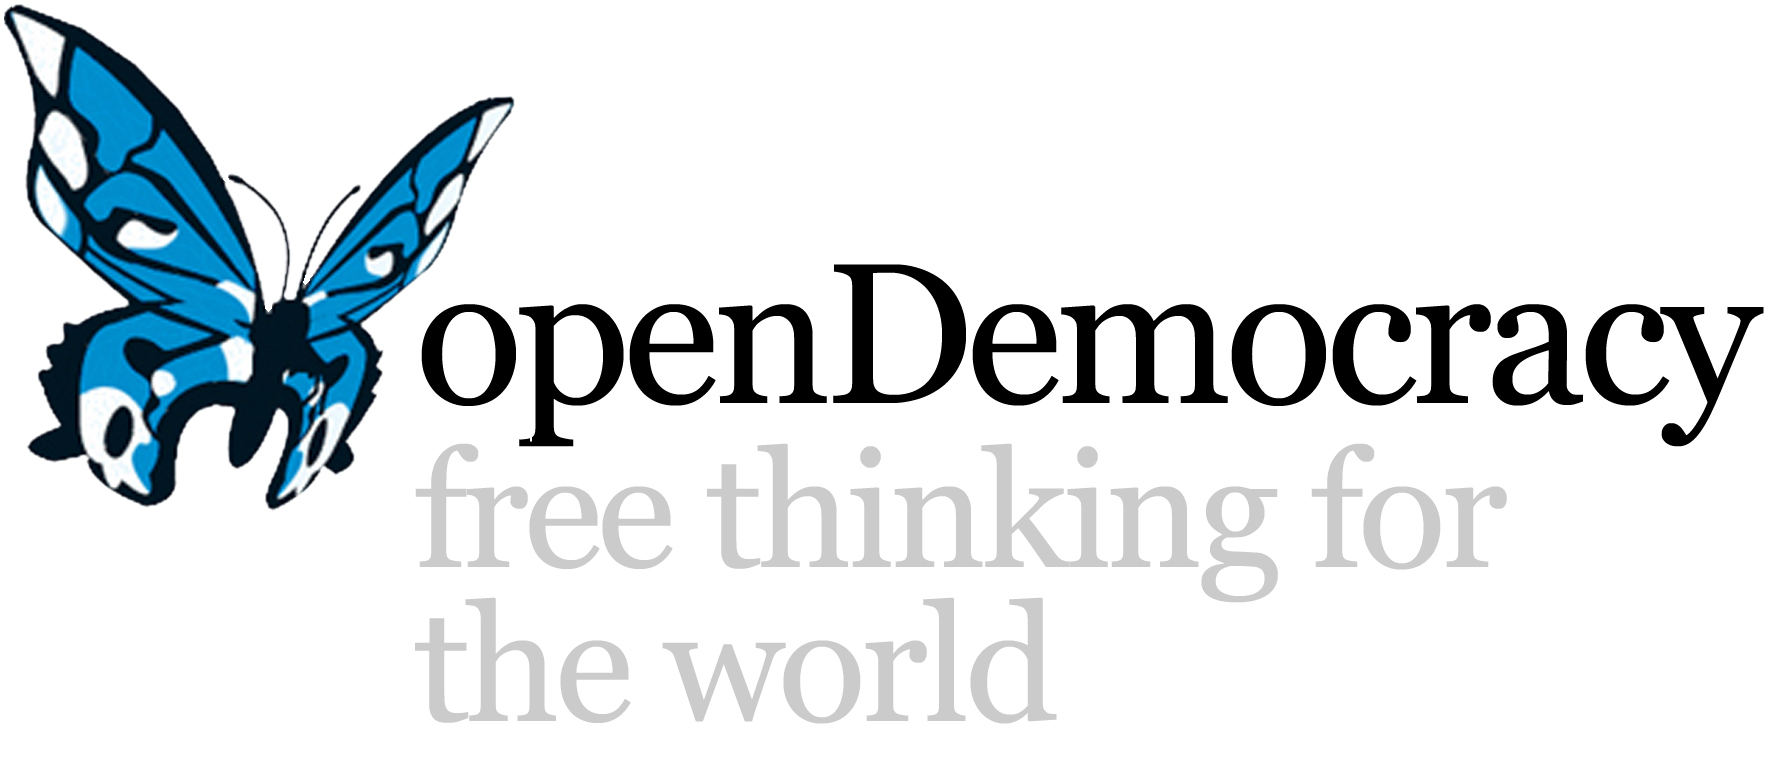 Opendemocracy